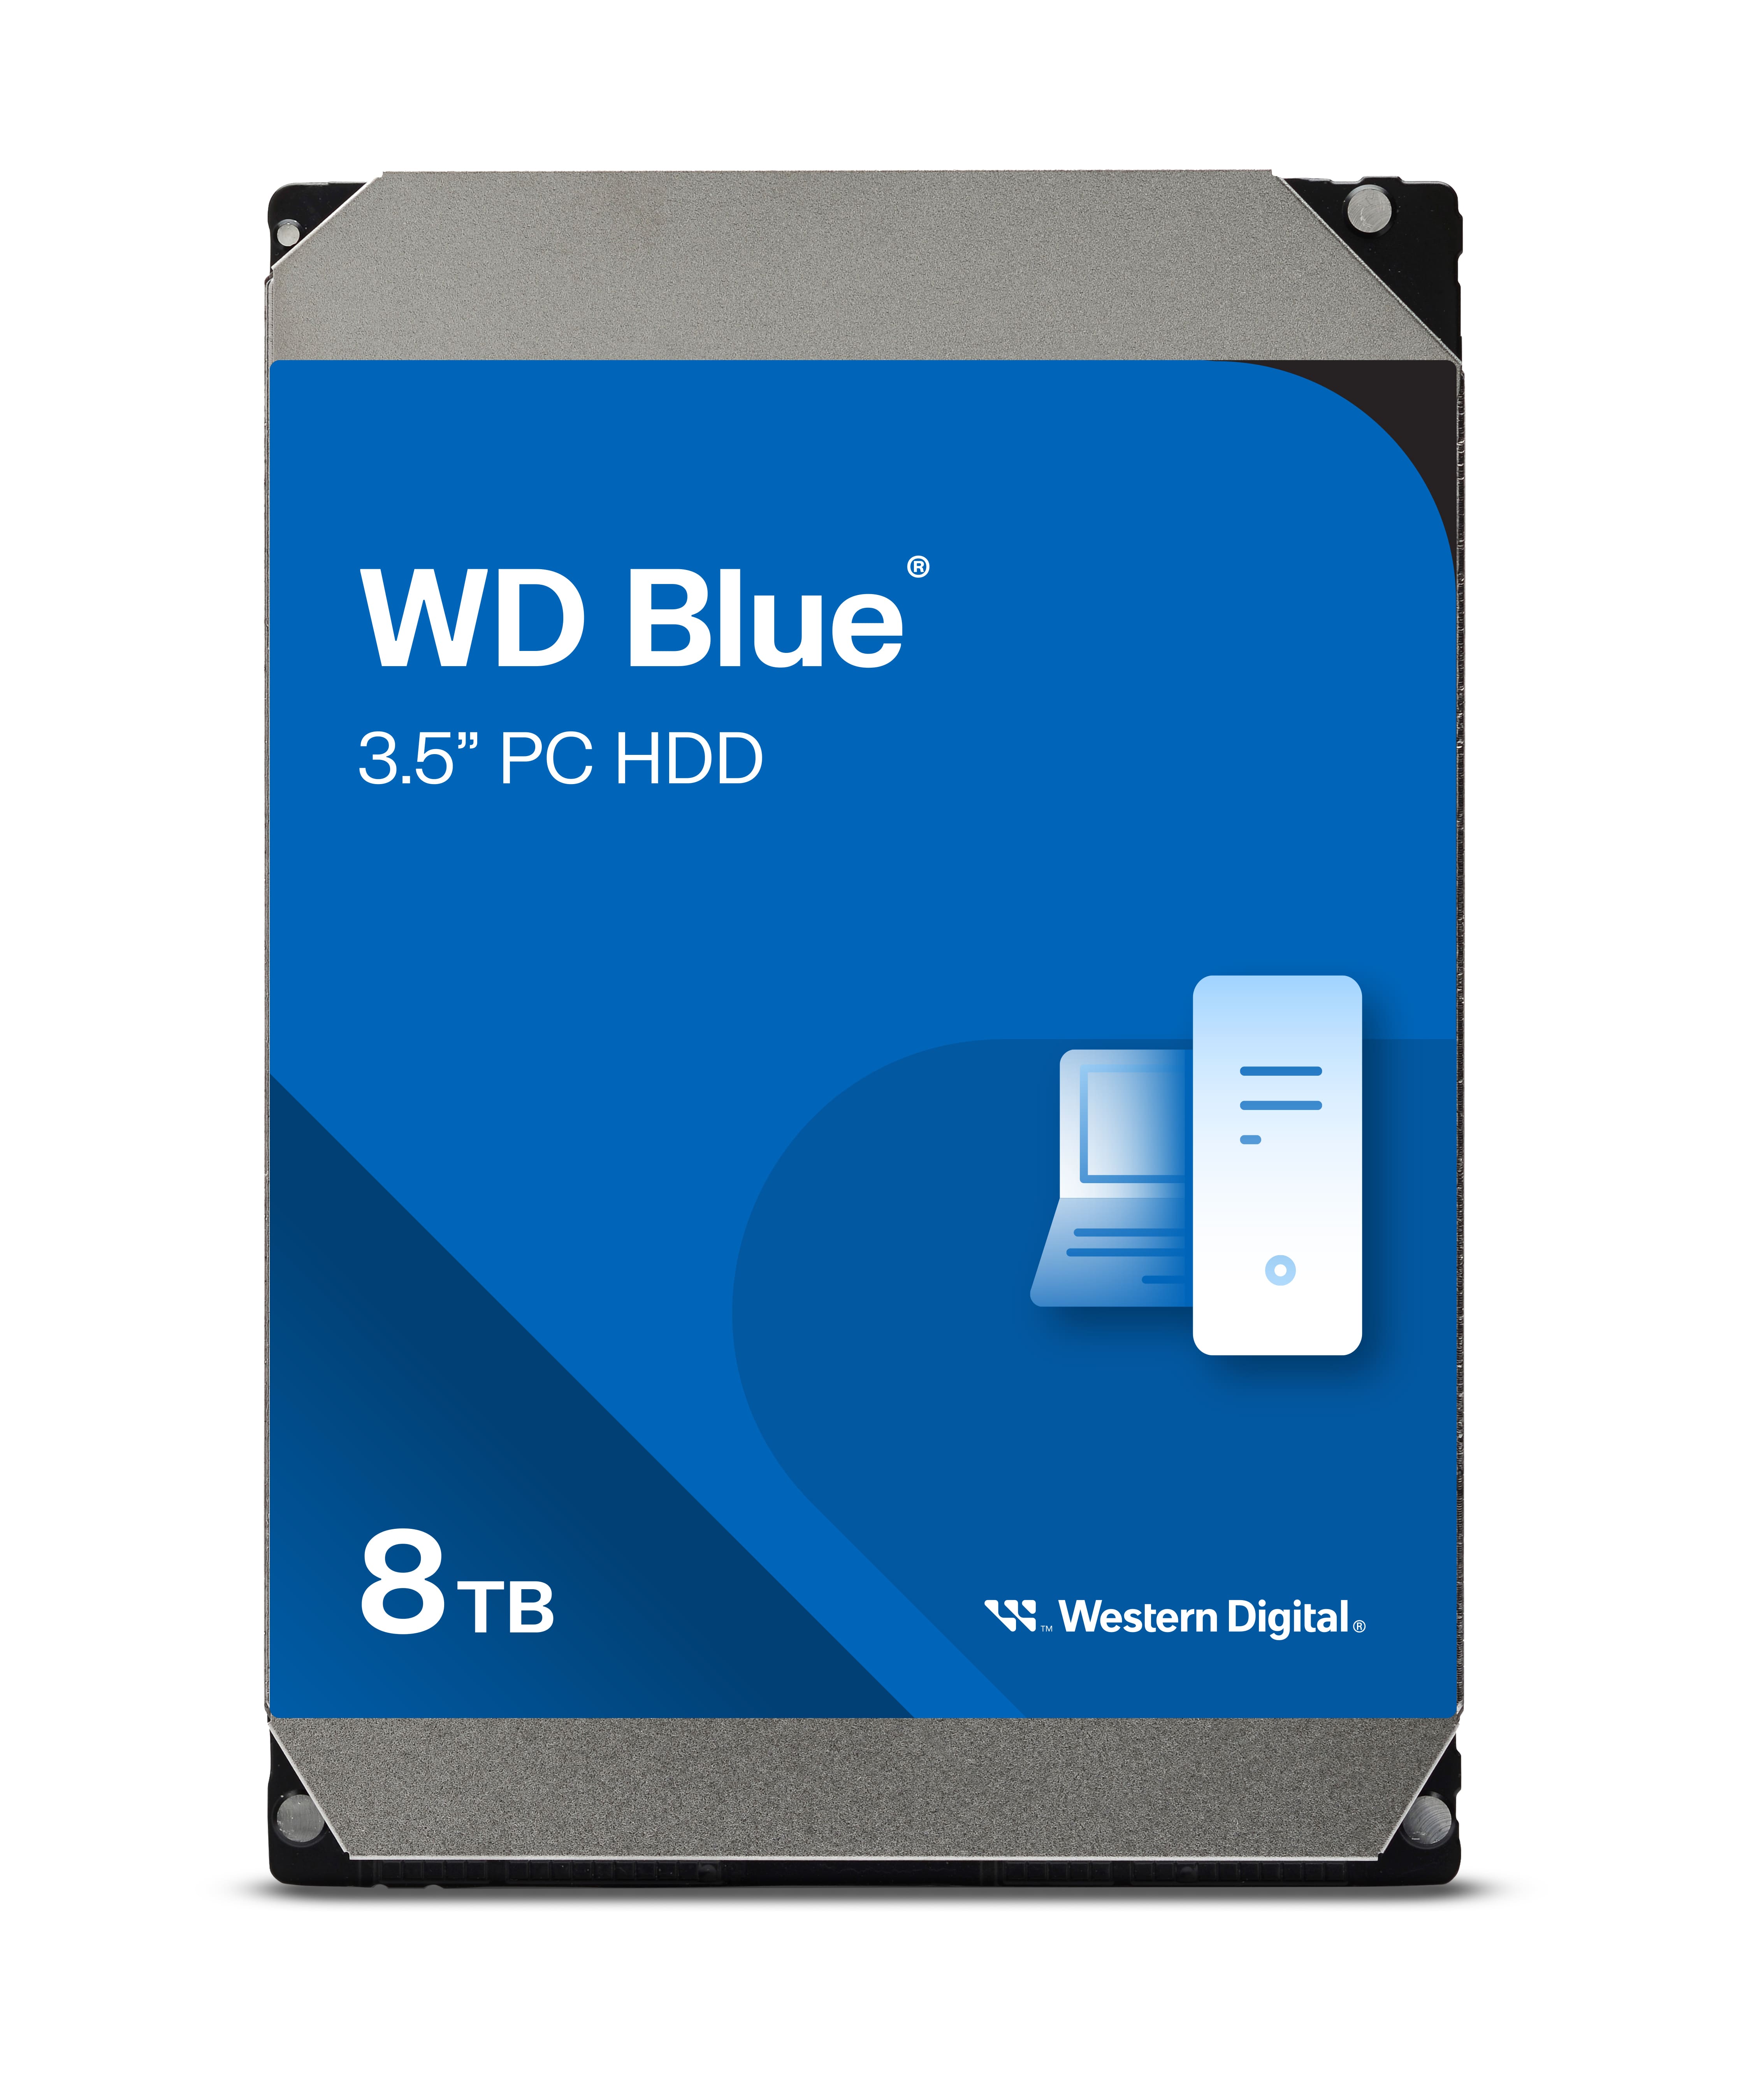 Western Digital ウエスタンデジタル WD80EAAZ [ WD Blue 内蔵 HDD ハードディスク 8TB CMR 3.5インチ  SATA 5640rpm キャッシュ256MB PC向け メーカー保証2年 ]｜パソコン・スマートフォン・デジタル機器販売のPC  DEPOT(ピーシーデポ)WEBSHOP